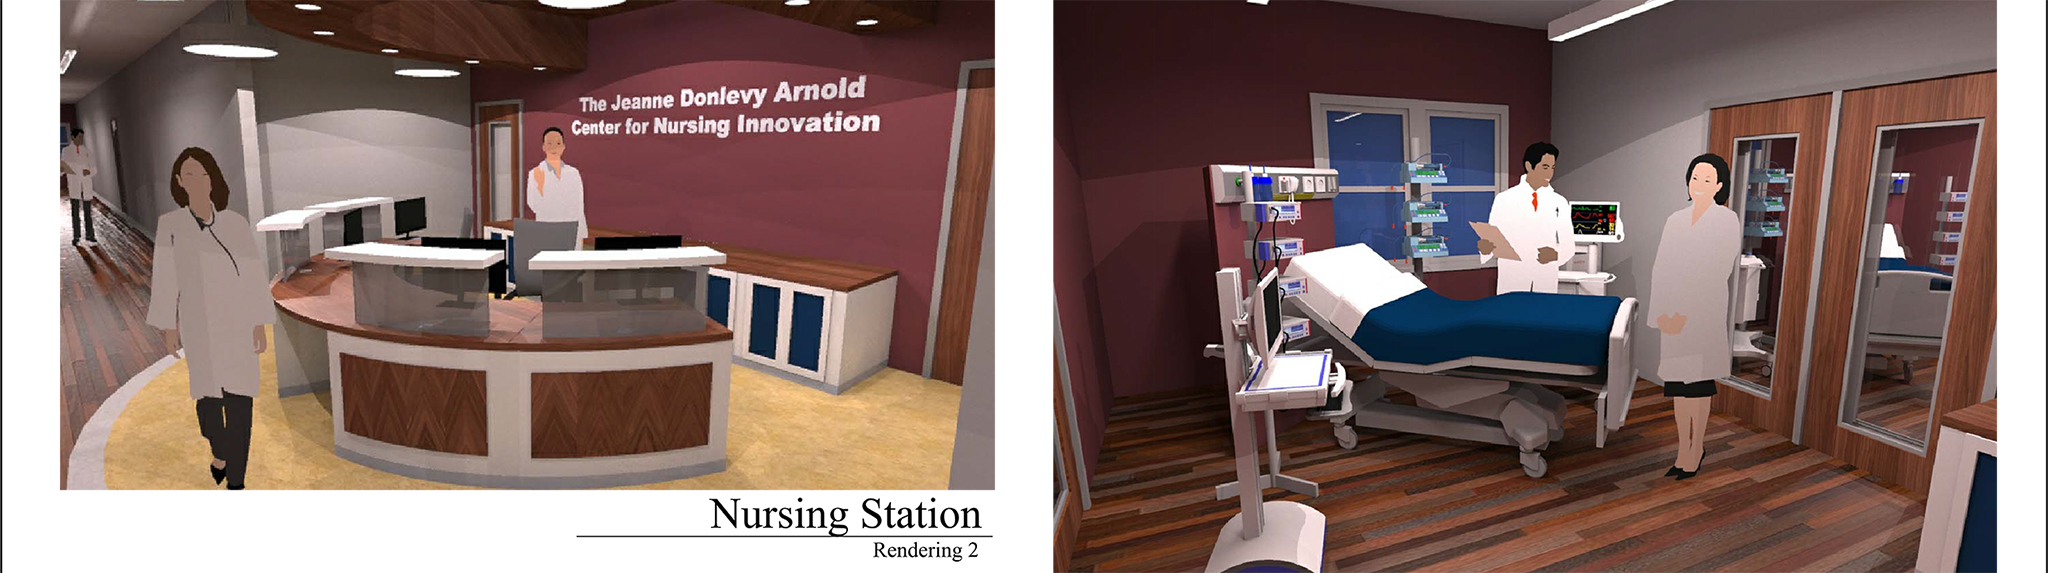 rendering of Mercy Hall Center for Nursing Innovation